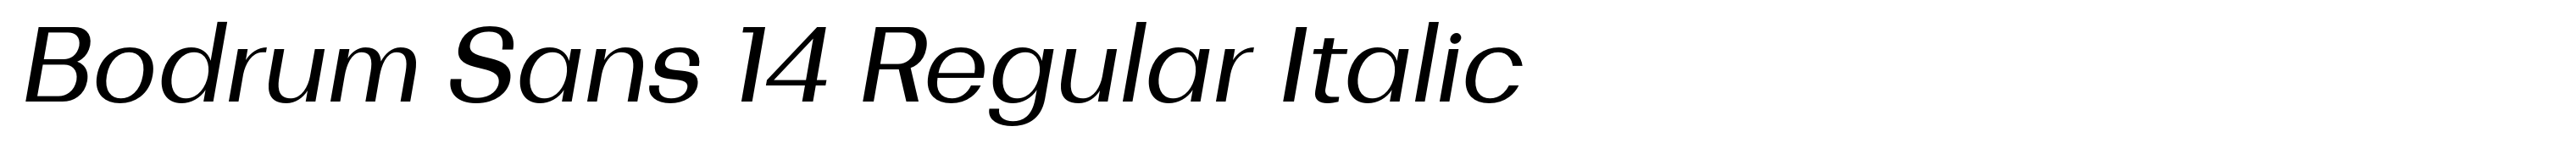 Bodrum Sans 14 Regular Italic